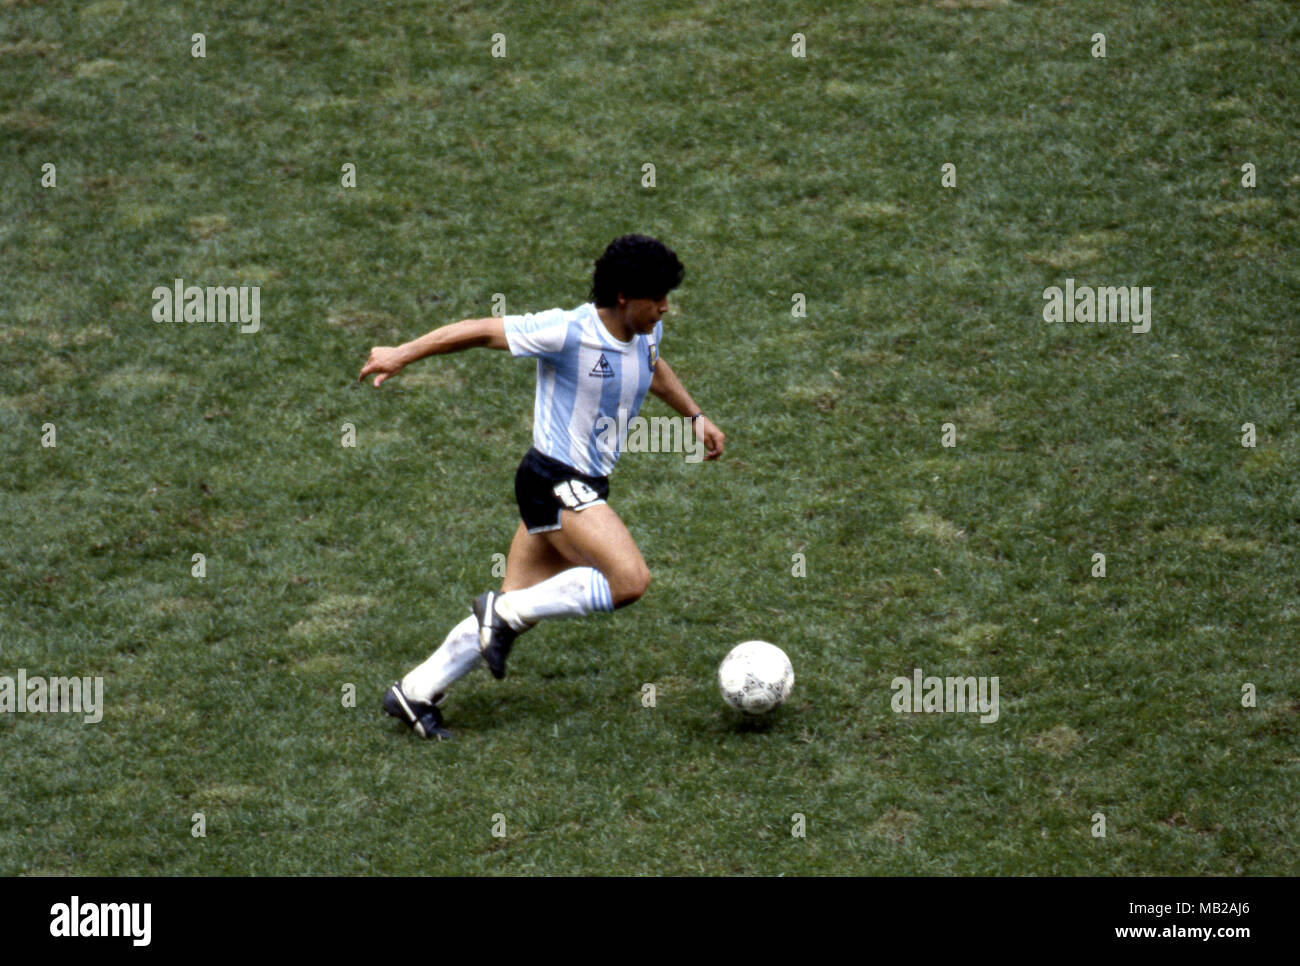 FIFA WM - Mexiko 1986 25.06.1986, Estadio Azteca, Mexico, D.F. Halbfinale Argentinien gegen Belgien. Diego Maradona - Argentinien Stockfoto